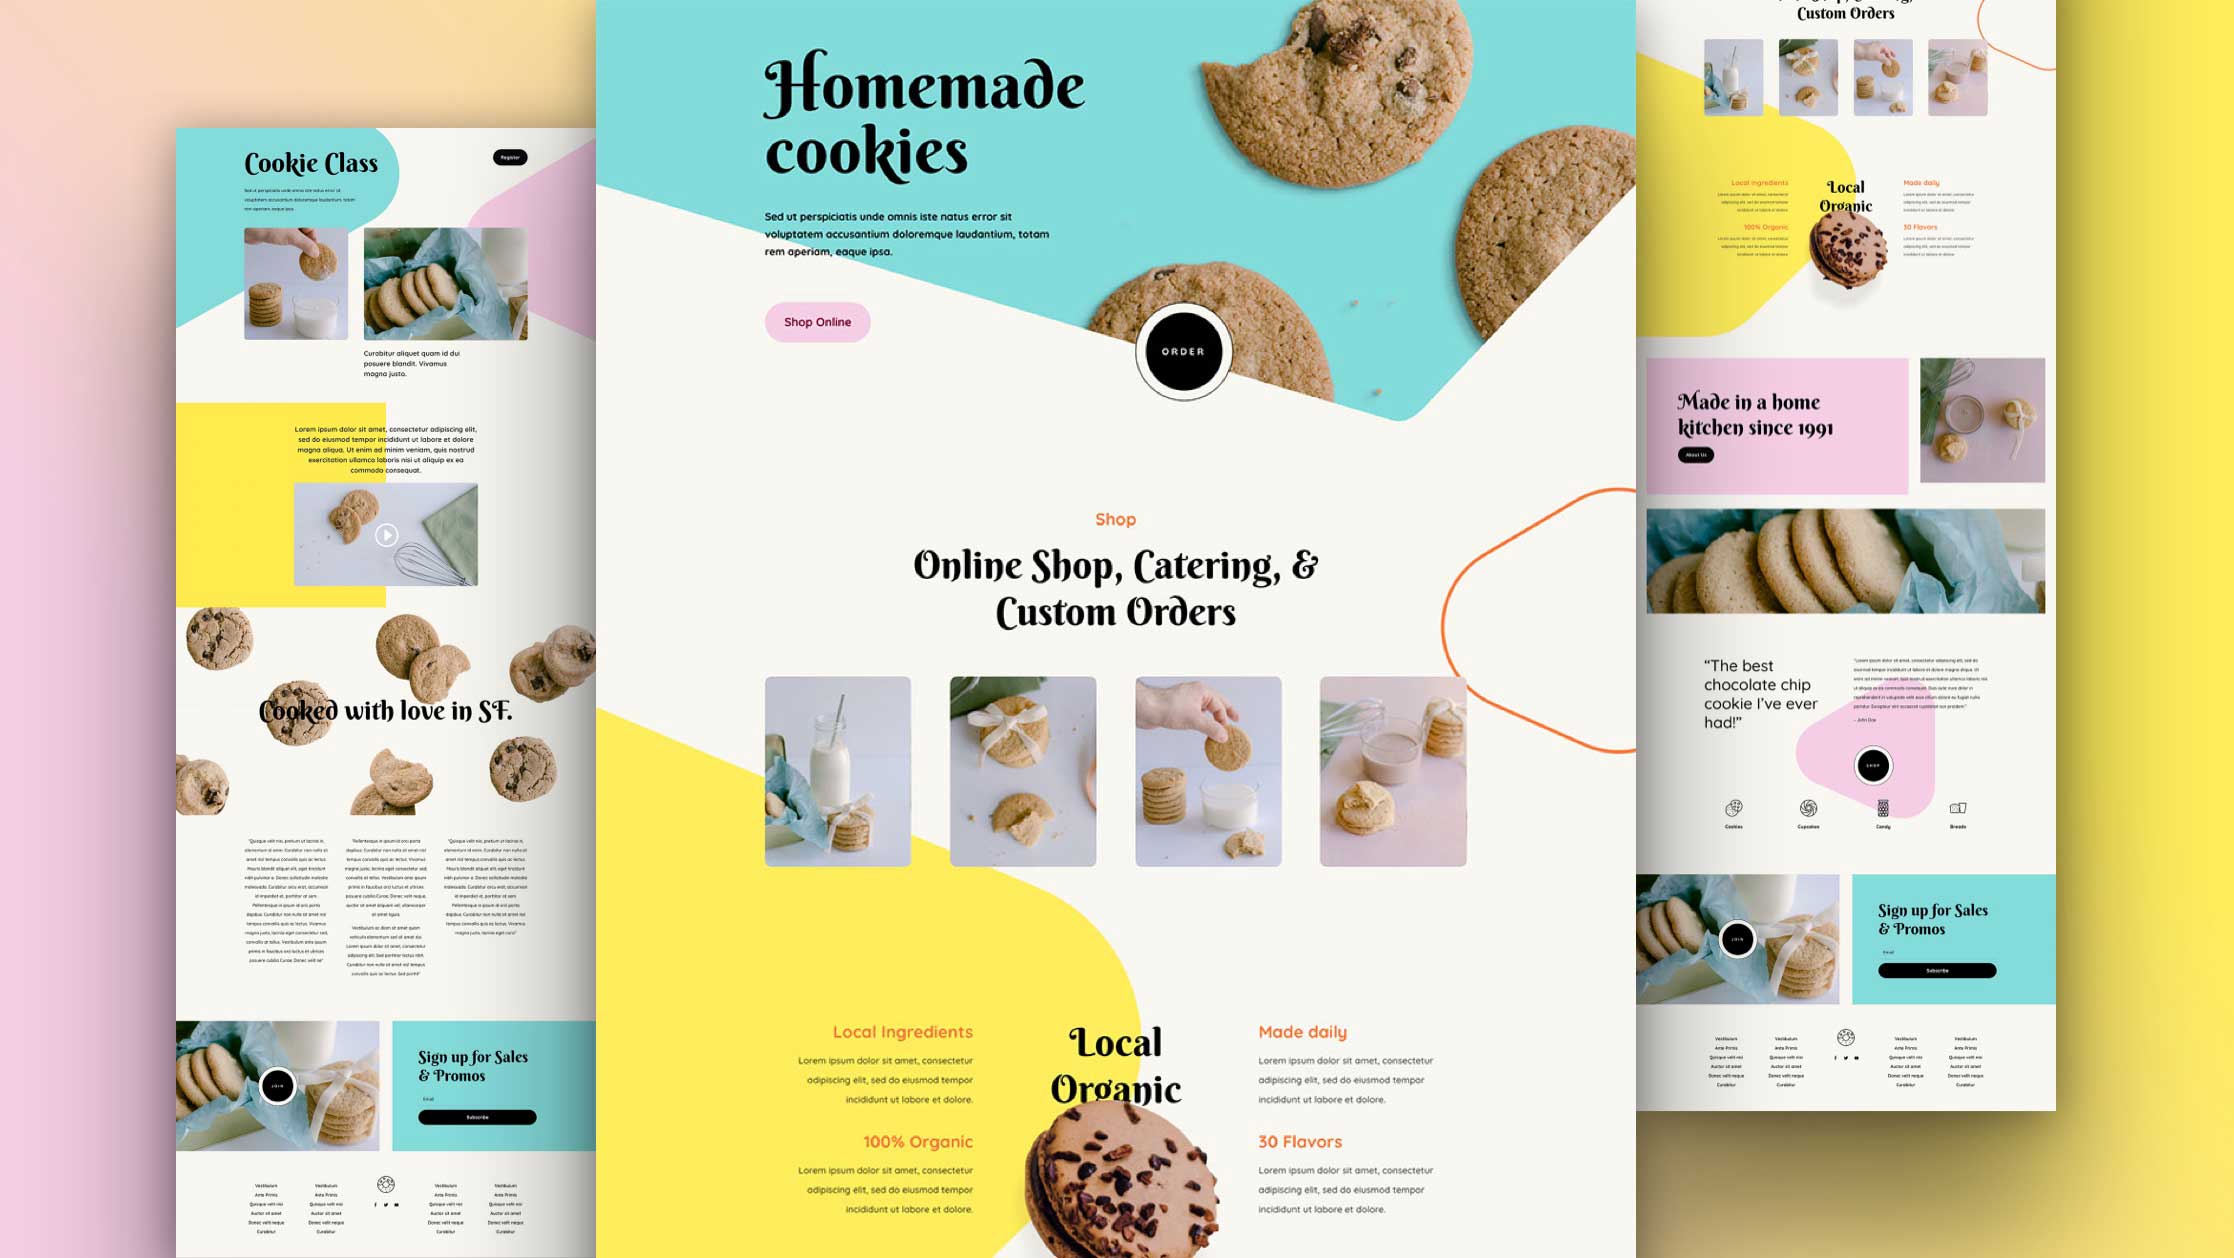 Kostenloses Layout Pack für einen Onlineshop für hausgemachte Kekse